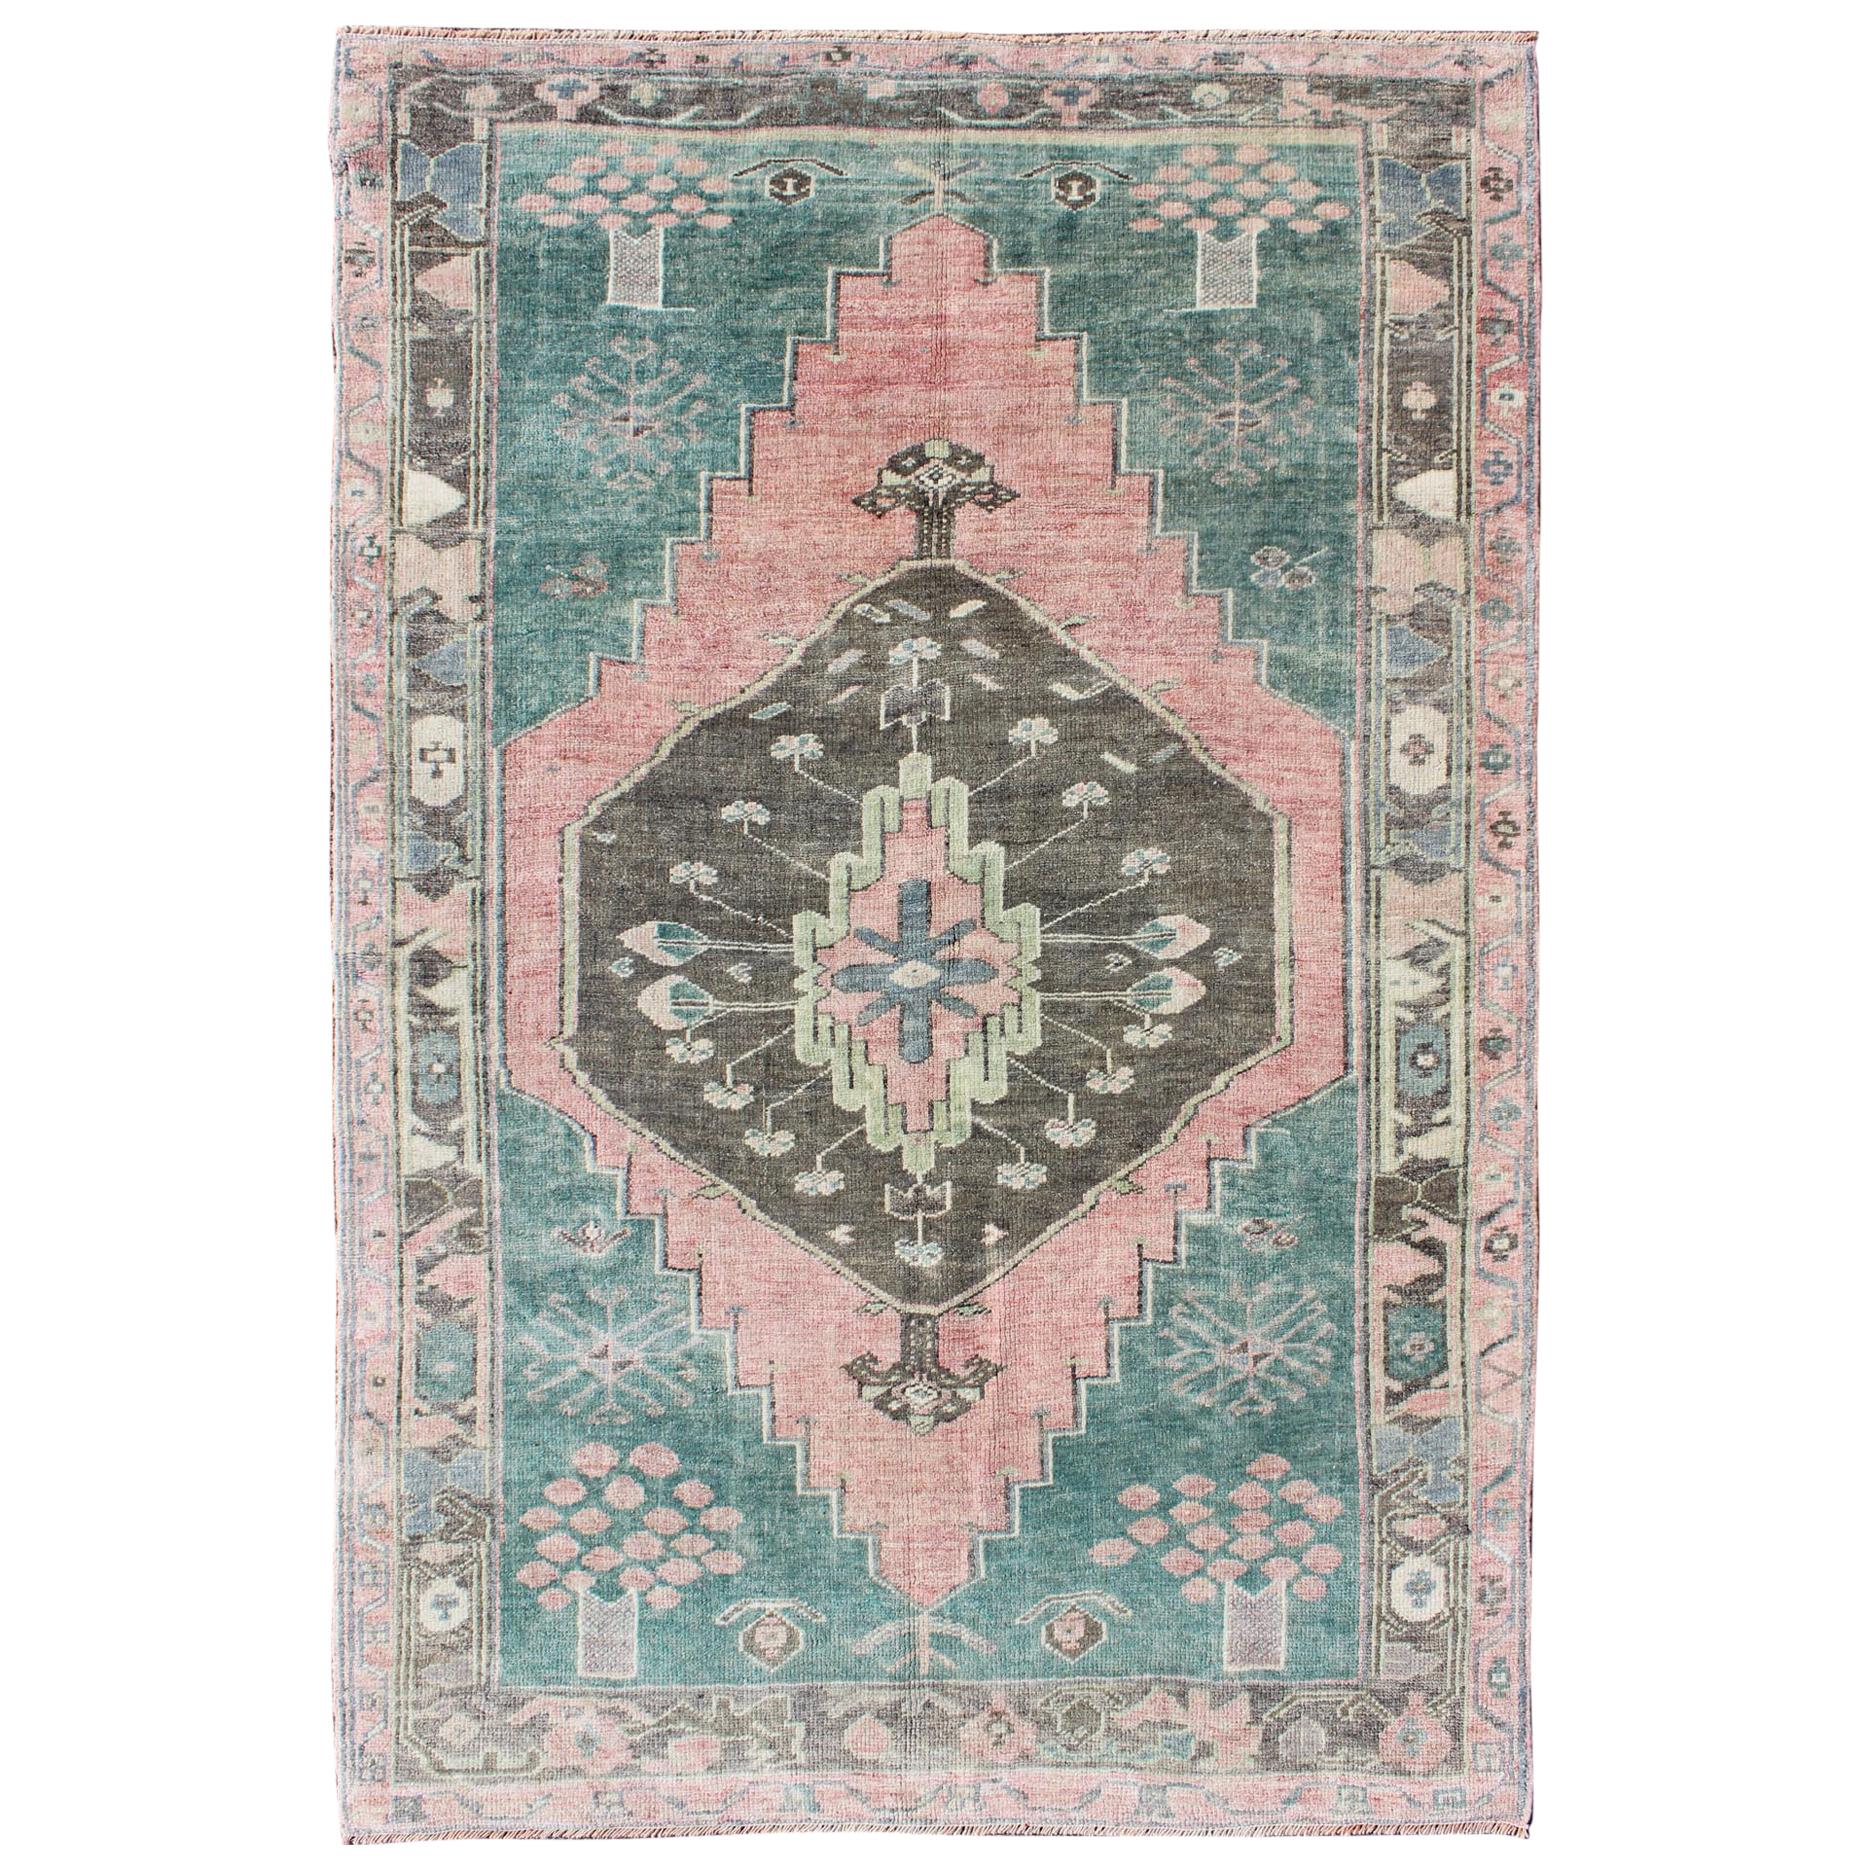 Türkischer Oushak-Teppich in Teal, Braun & Lachsfarben im Vintage-Stil mit geometrischem Medaillon